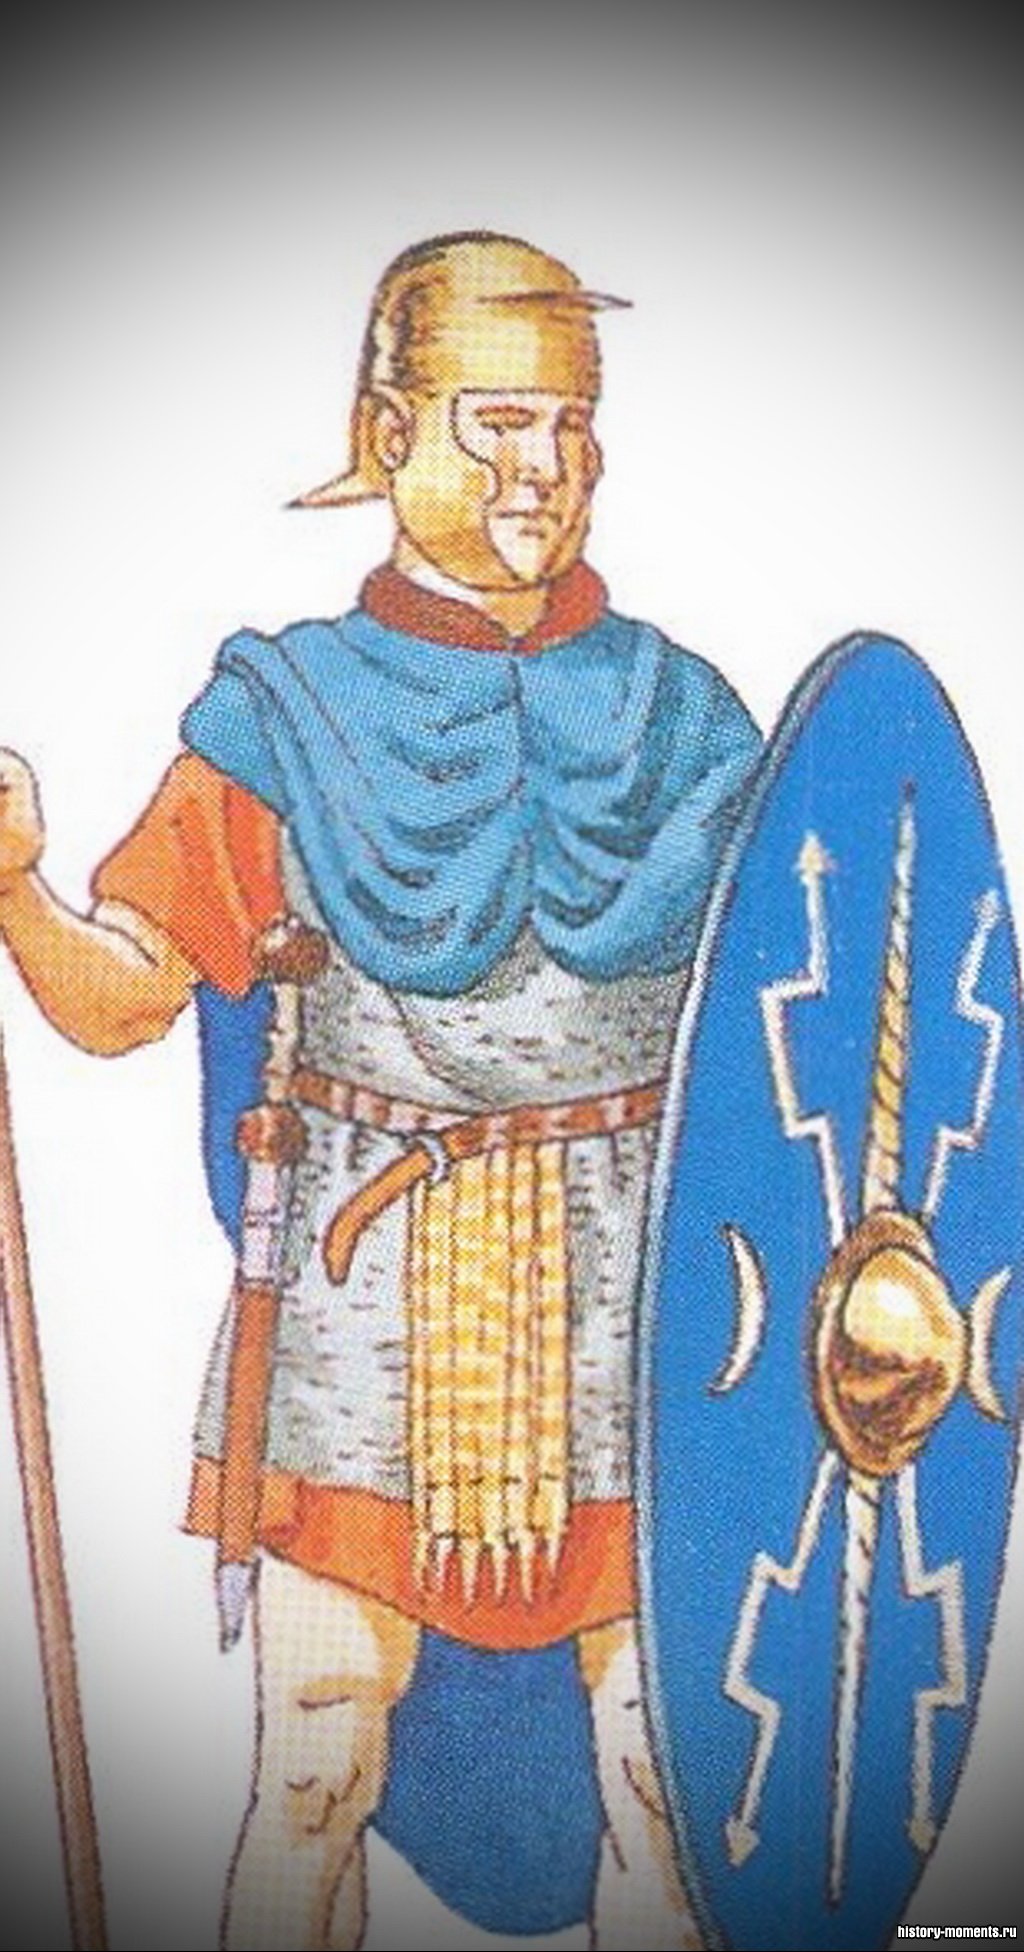 Ауксилиарии -вспомогательные войска легиона, защищавшие фланги. Состояли из «союзников» -италиков, этрусков, позднее из провинциалов.